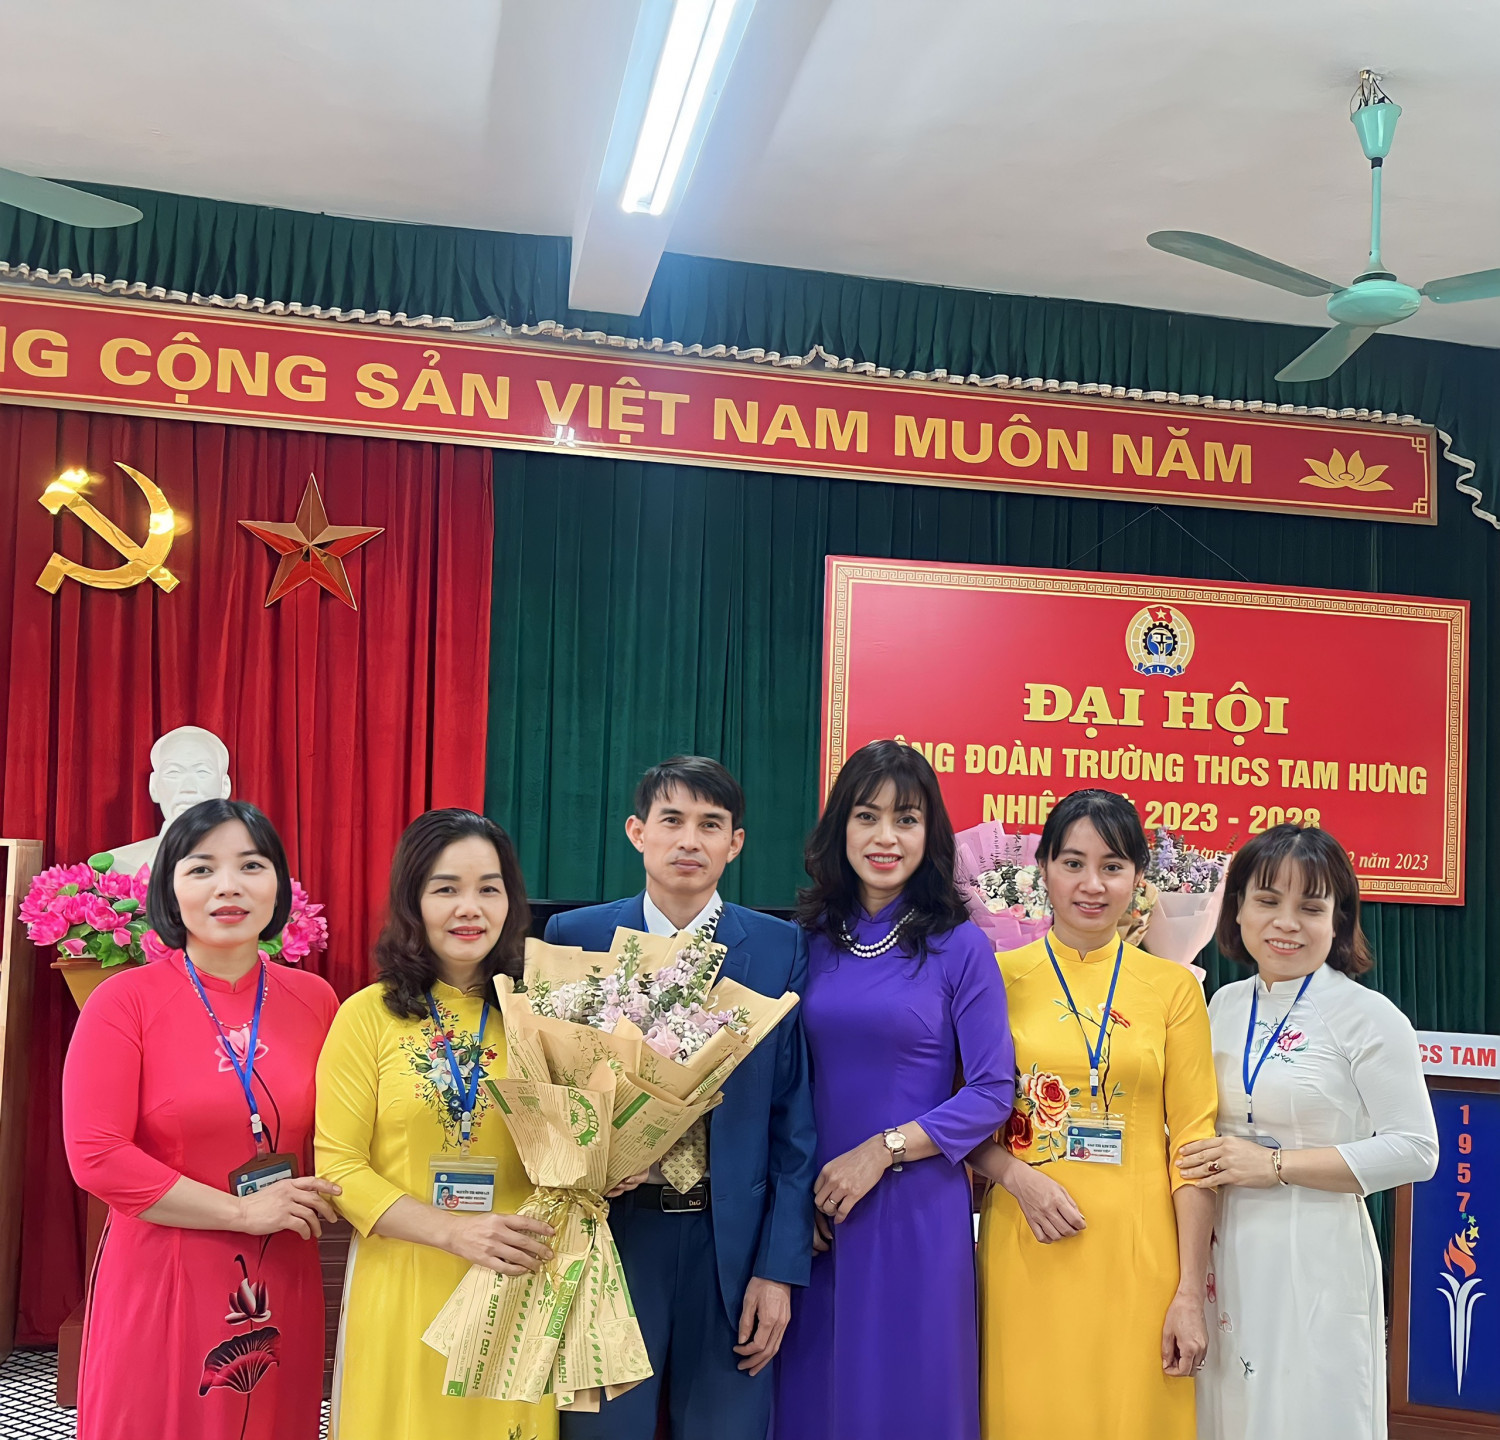 Đ/c Bùi Hà Thanh- Bí thư chi bộ, Hiệu trưởng trường THCS Tam Hưng tặng hoa chúc mừng Ban chấp hành Công đoàn Trường THCS Tam Hưng  nhiệm kỳ 2023 - 2028